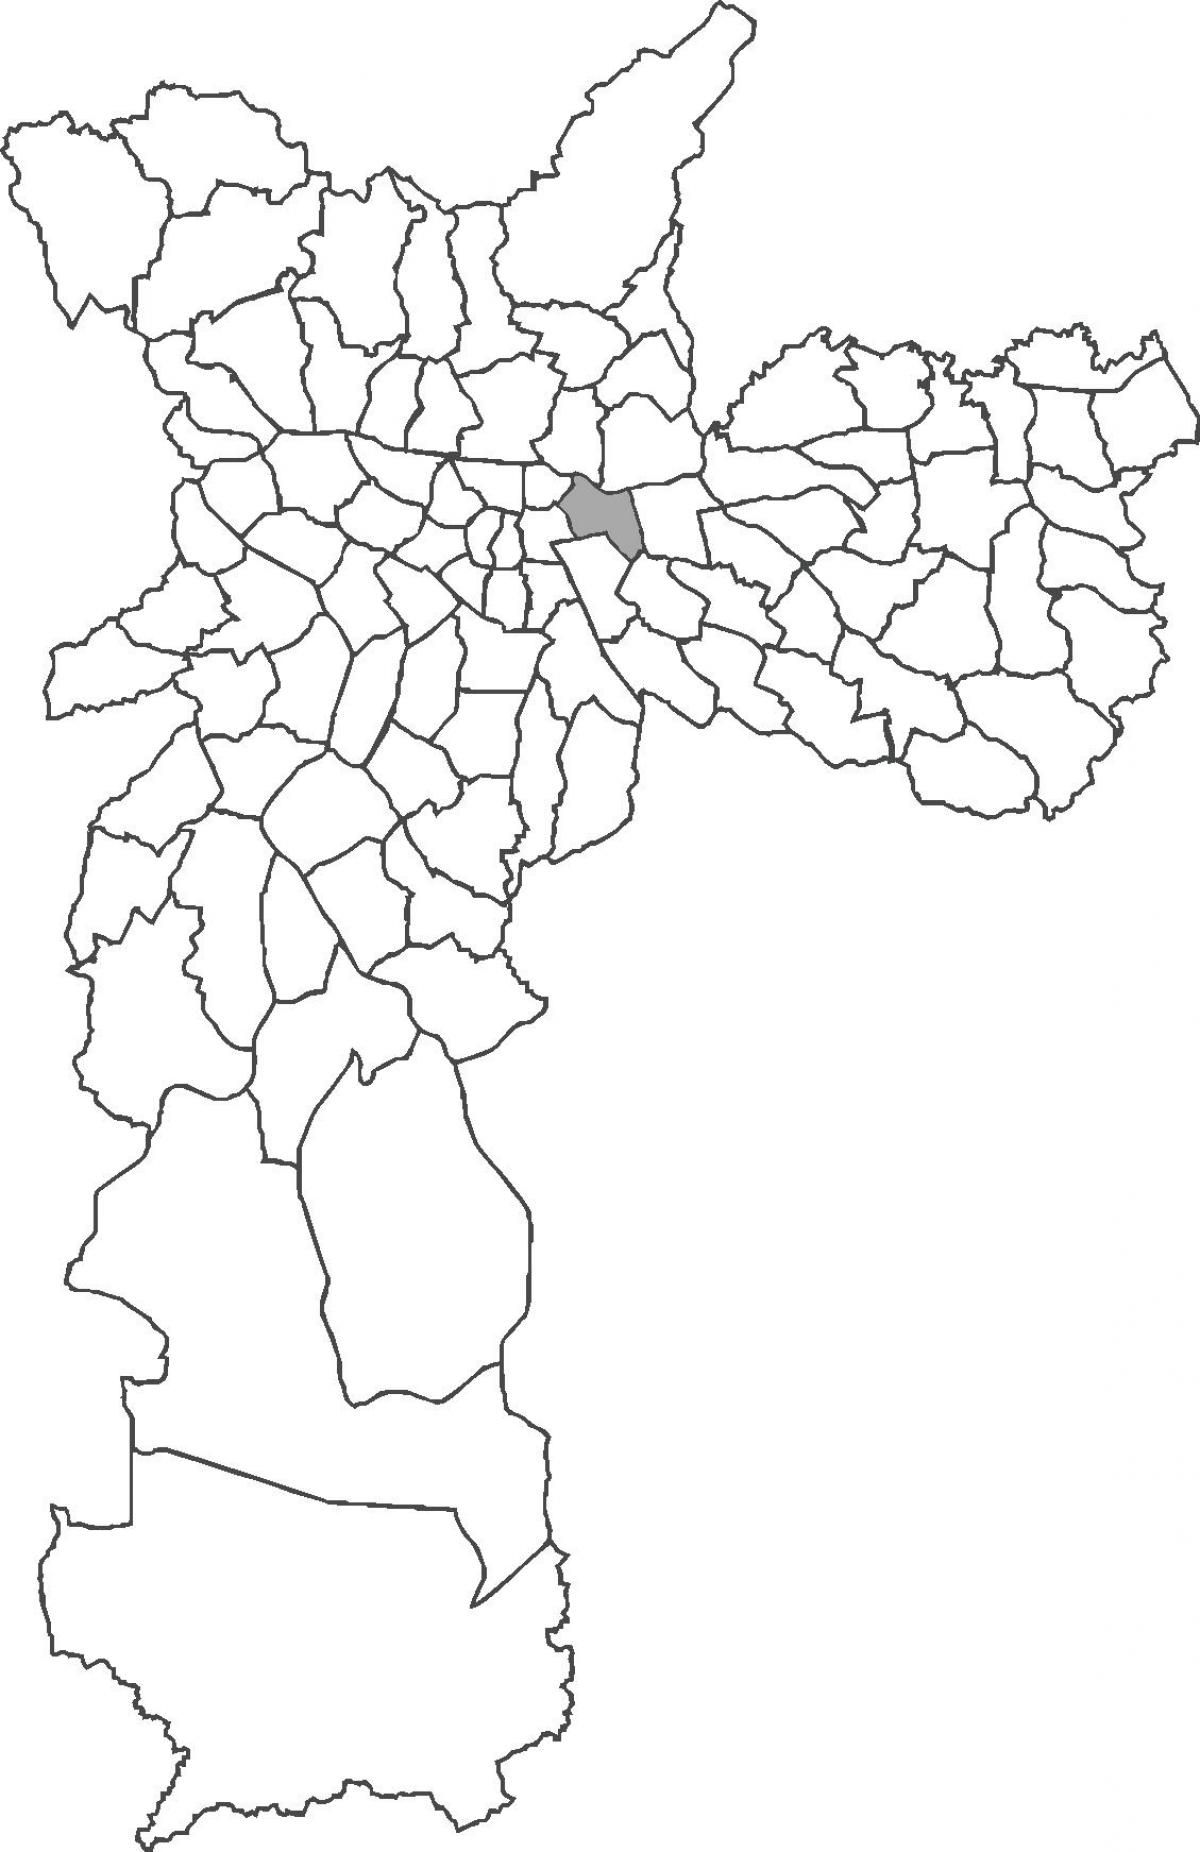 Peta Belém daerah